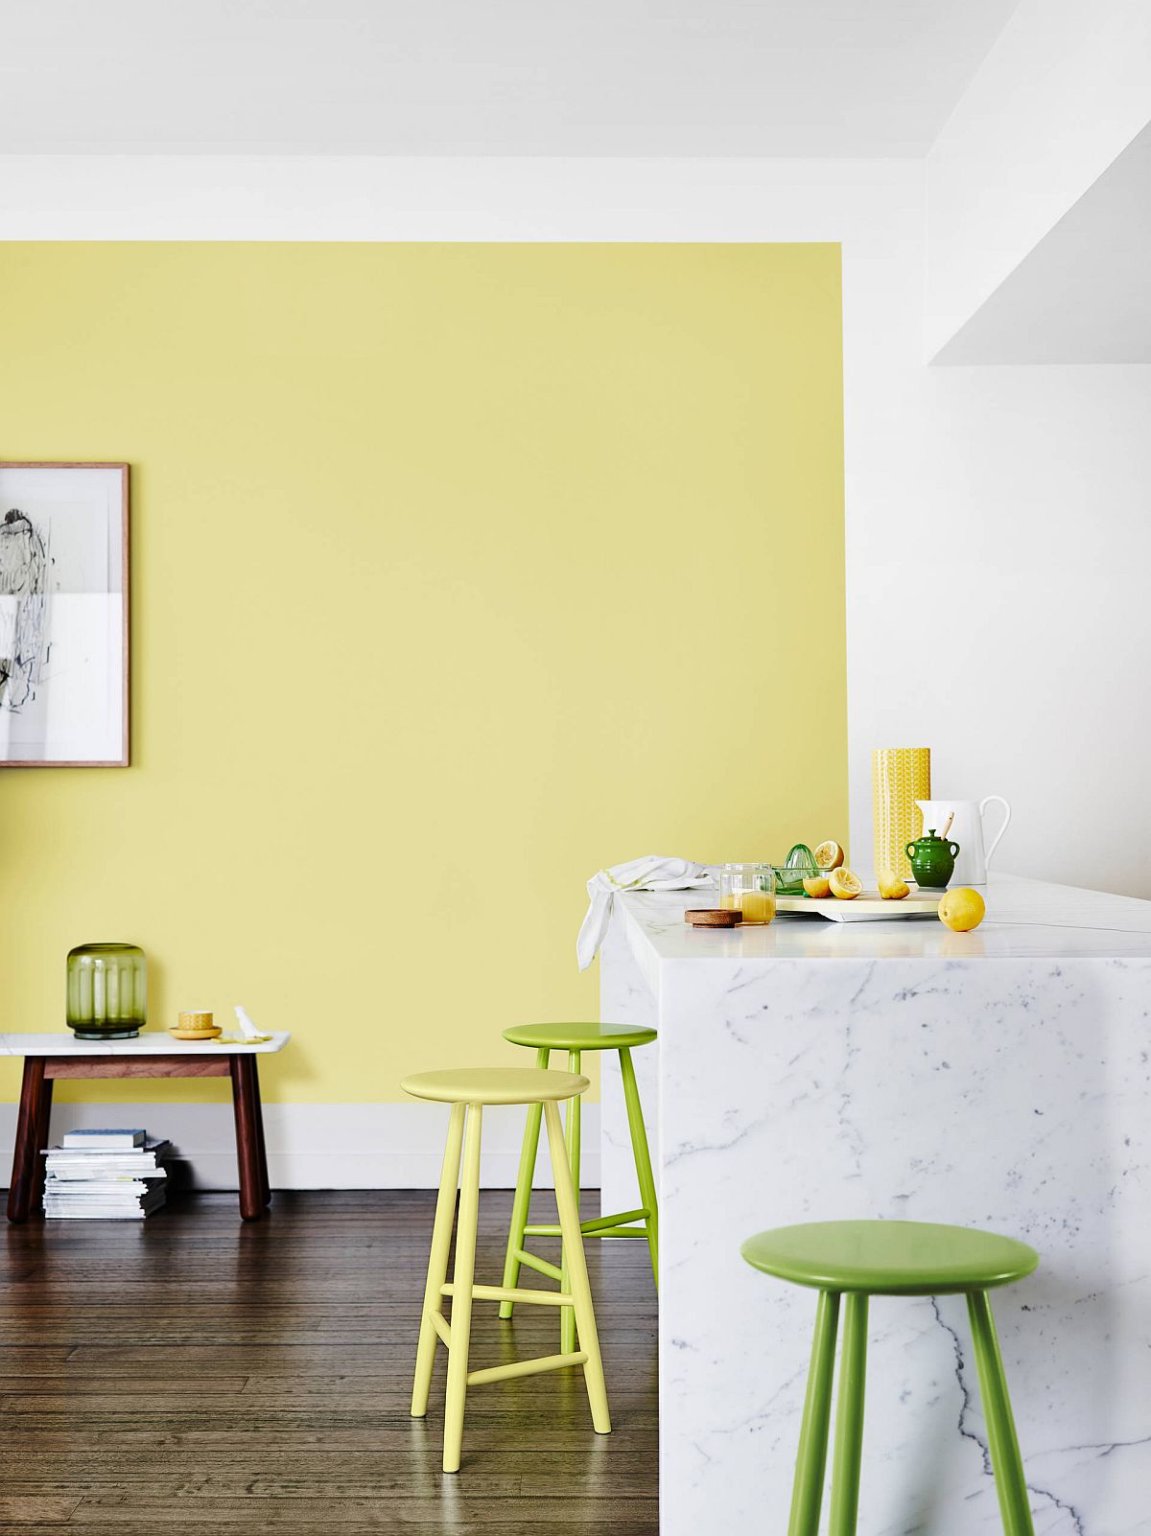 hình ảnh góc phòng bếp hiện đại với tường sơn màu vàng chanh, ghế bar xanh lá, bàn đảo ốp đá cẩm thạch